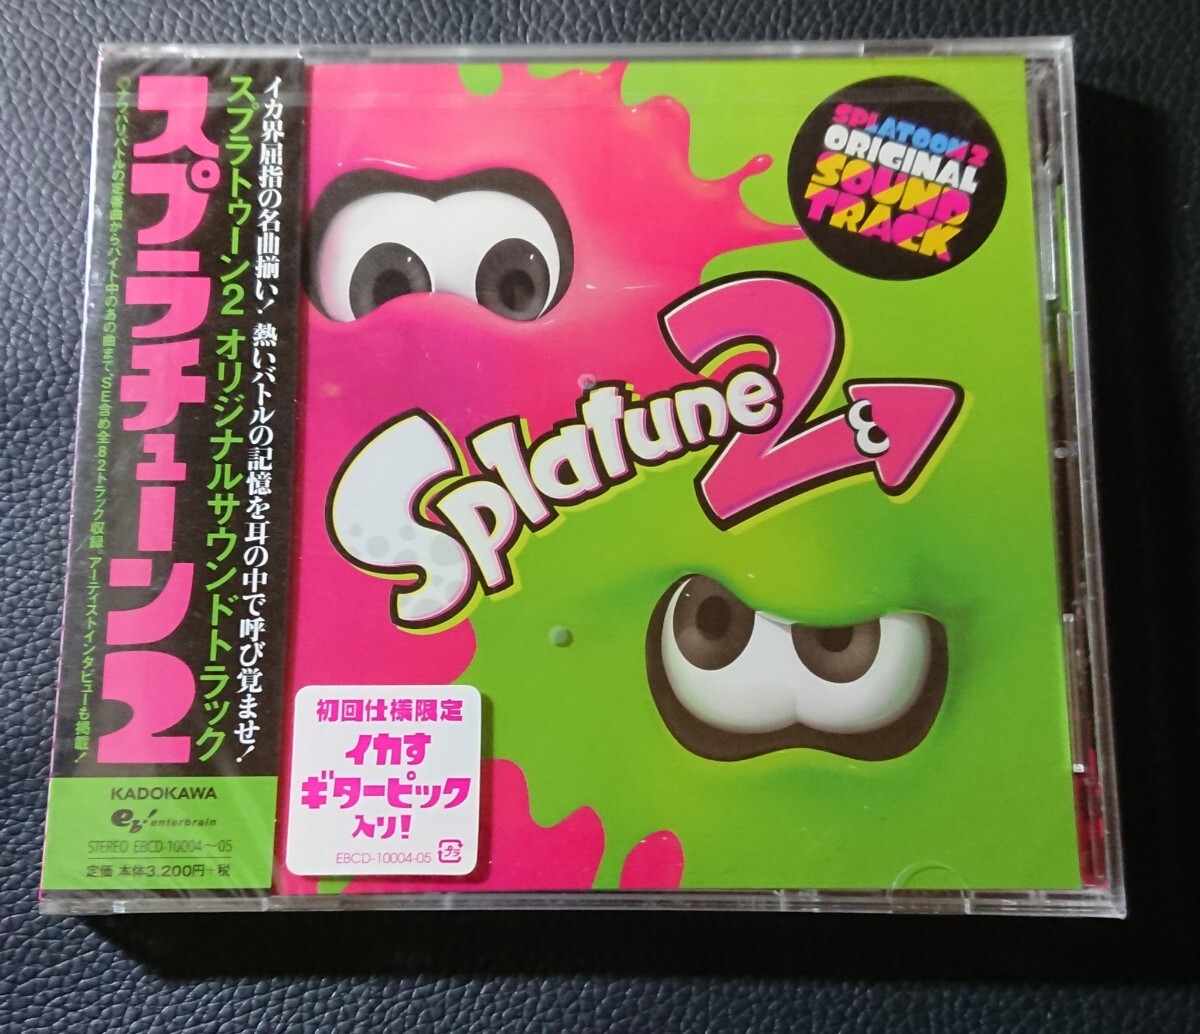 スプラトゥーン2 オリジナルサウンドトラック ORIGINAL スプラチューン